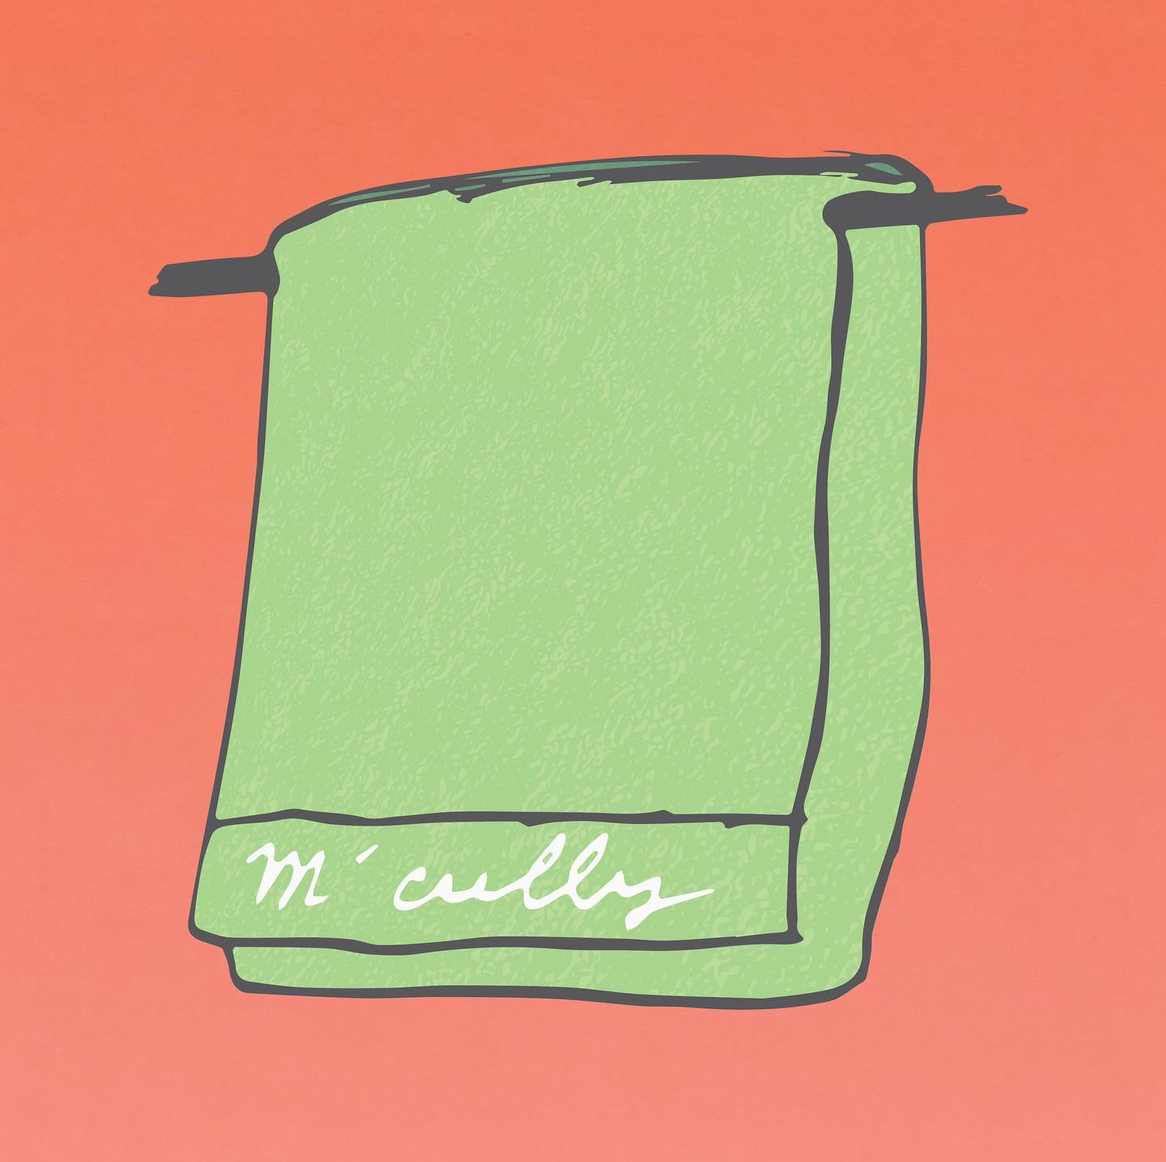 Single: Juno Dunes – M’cully Culkin